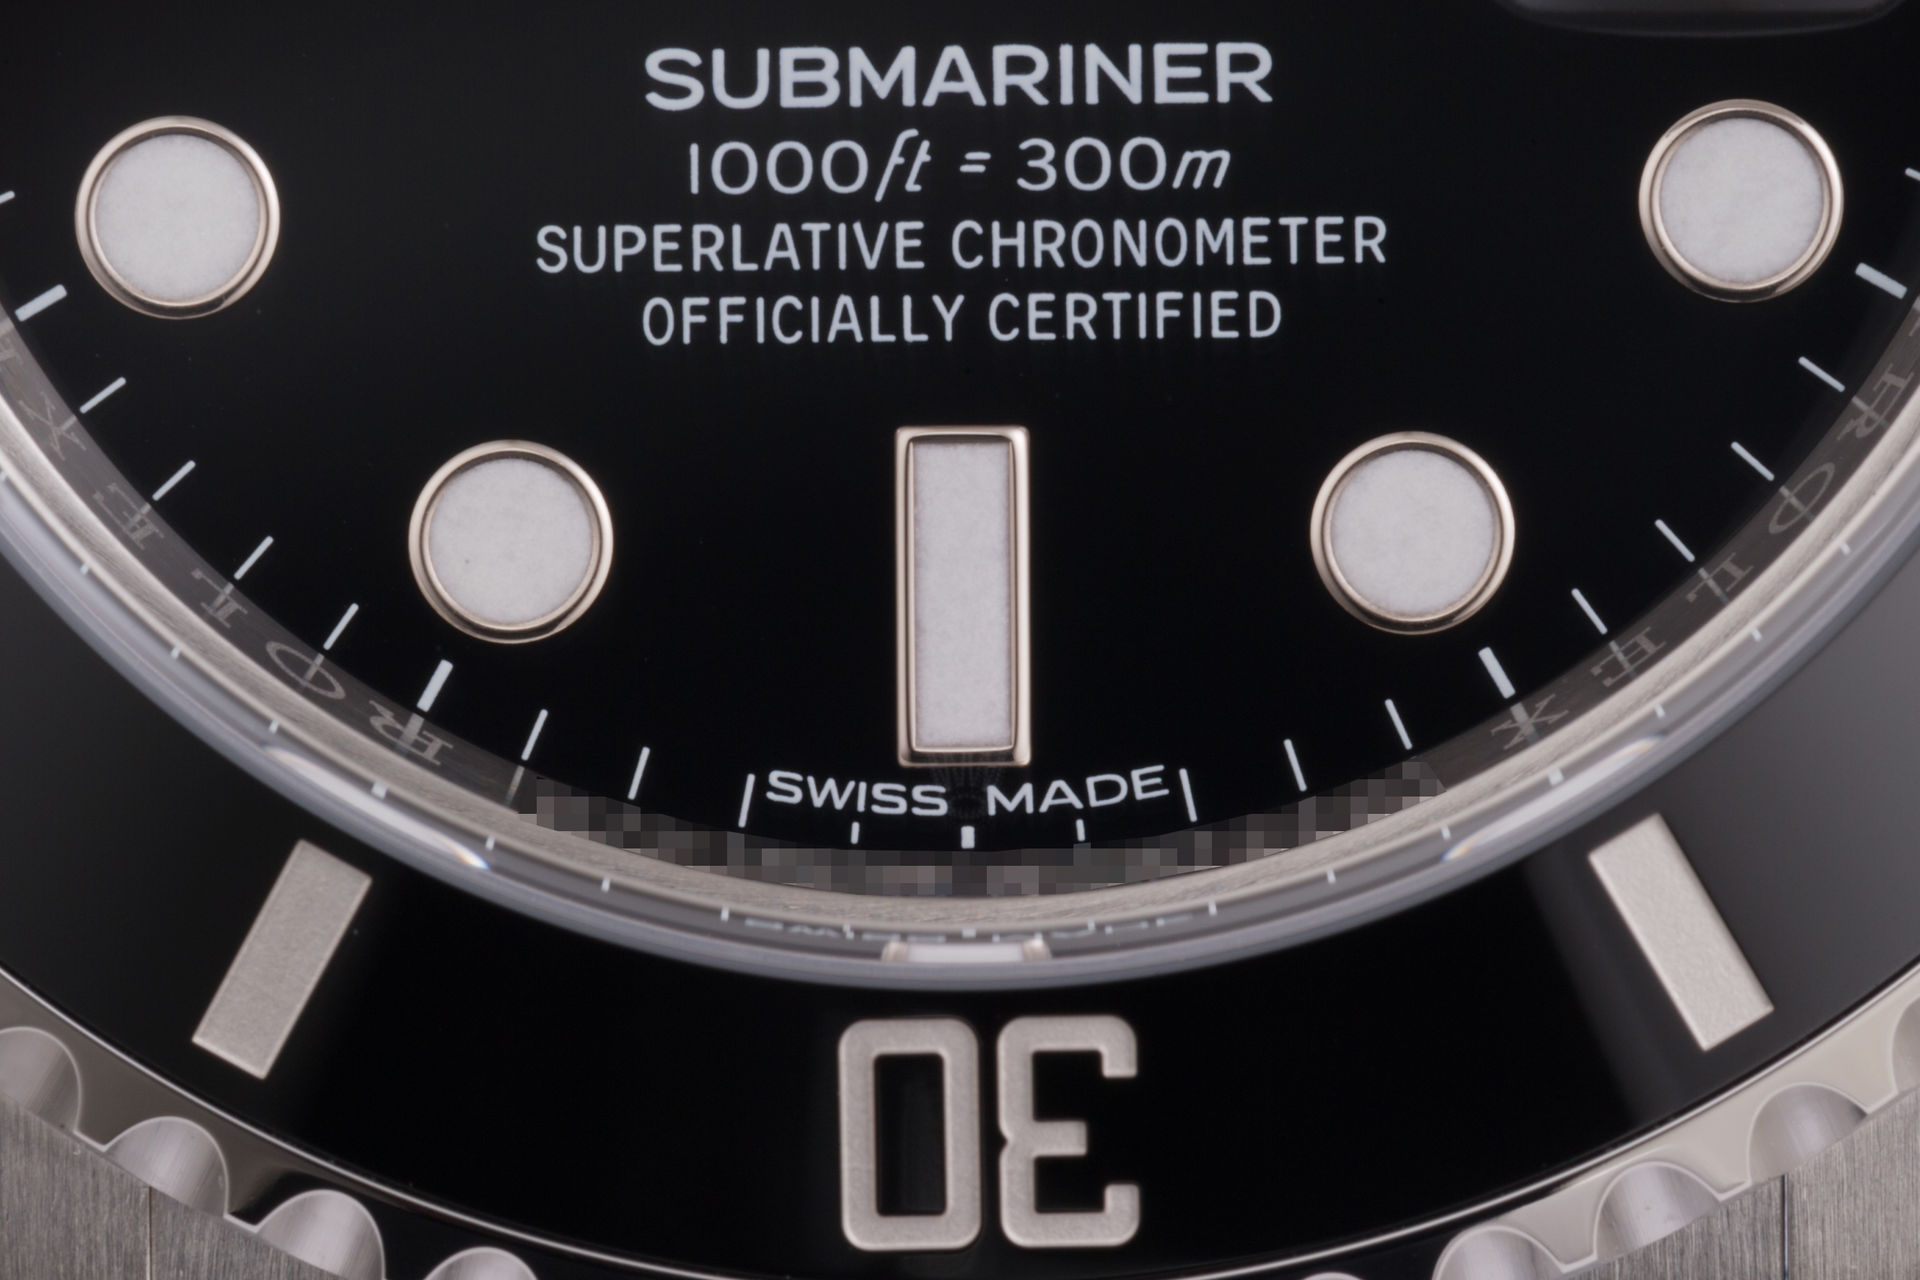 ref 116610LN | 5 Year Rolex Warranty | Rolex Submariner Date